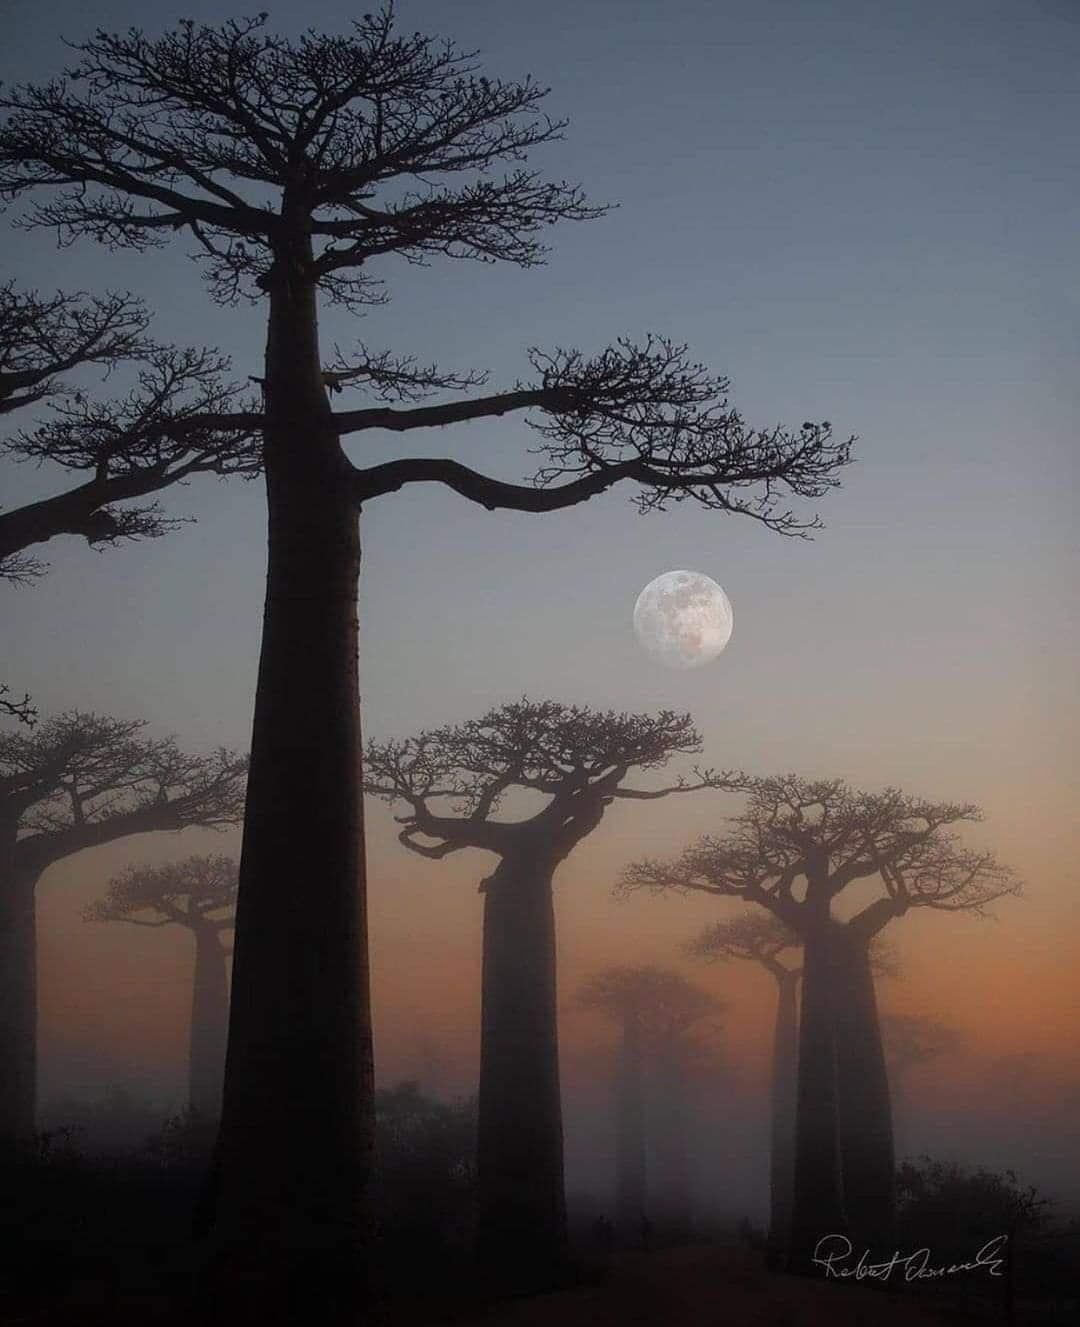 Baobab Alley, Madagascar